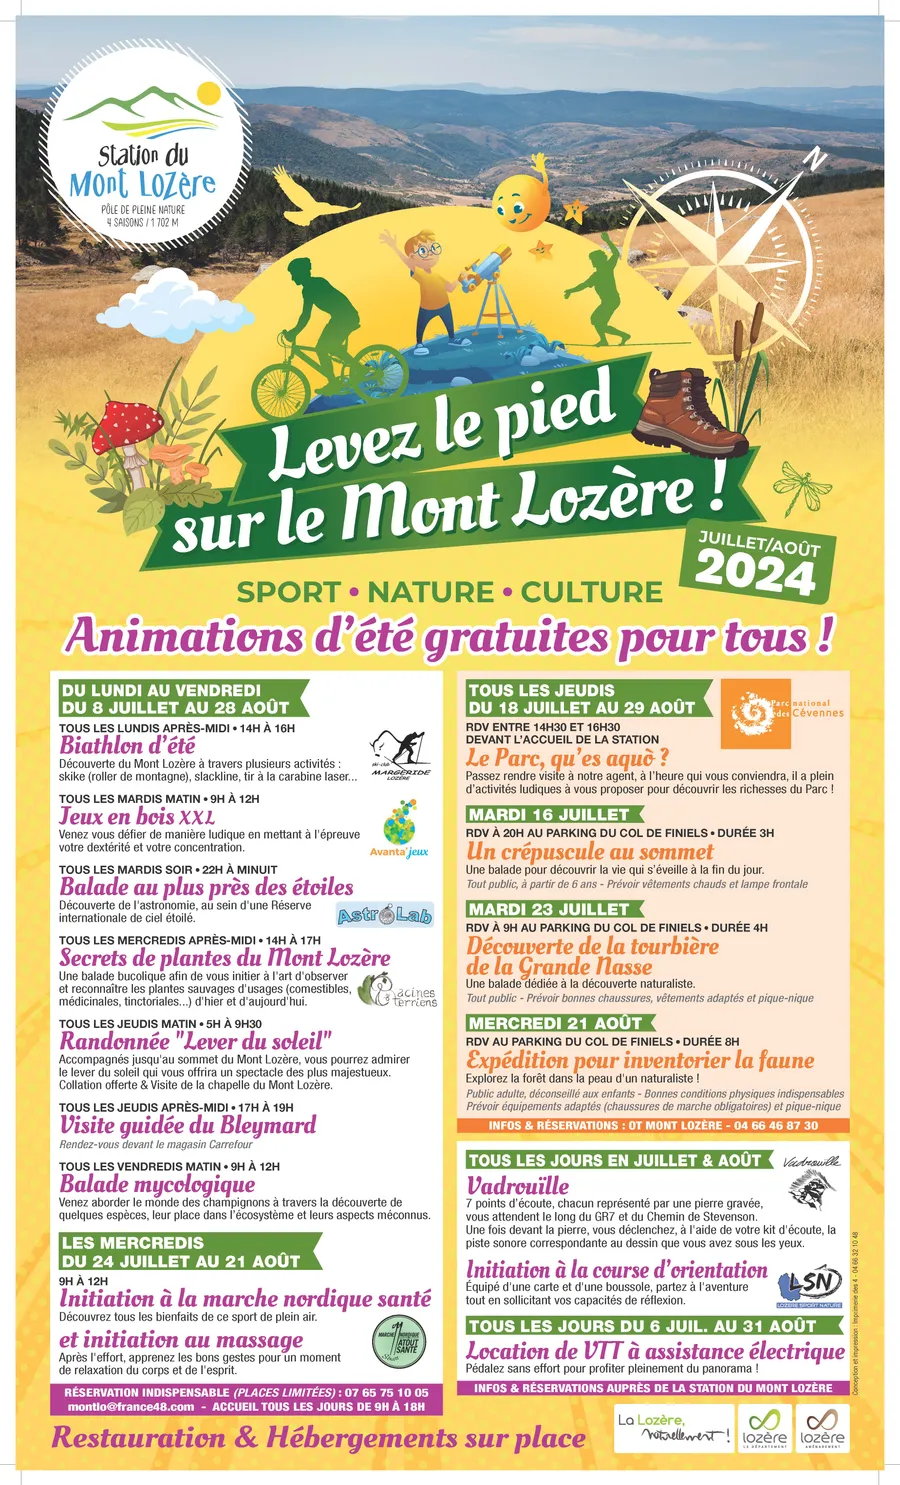 Image du carousel qui illustre: Levez Le Pied Sur Le Mont Lozere : Visite Guidée Du Bleymard à Mont Lozère et Goulet